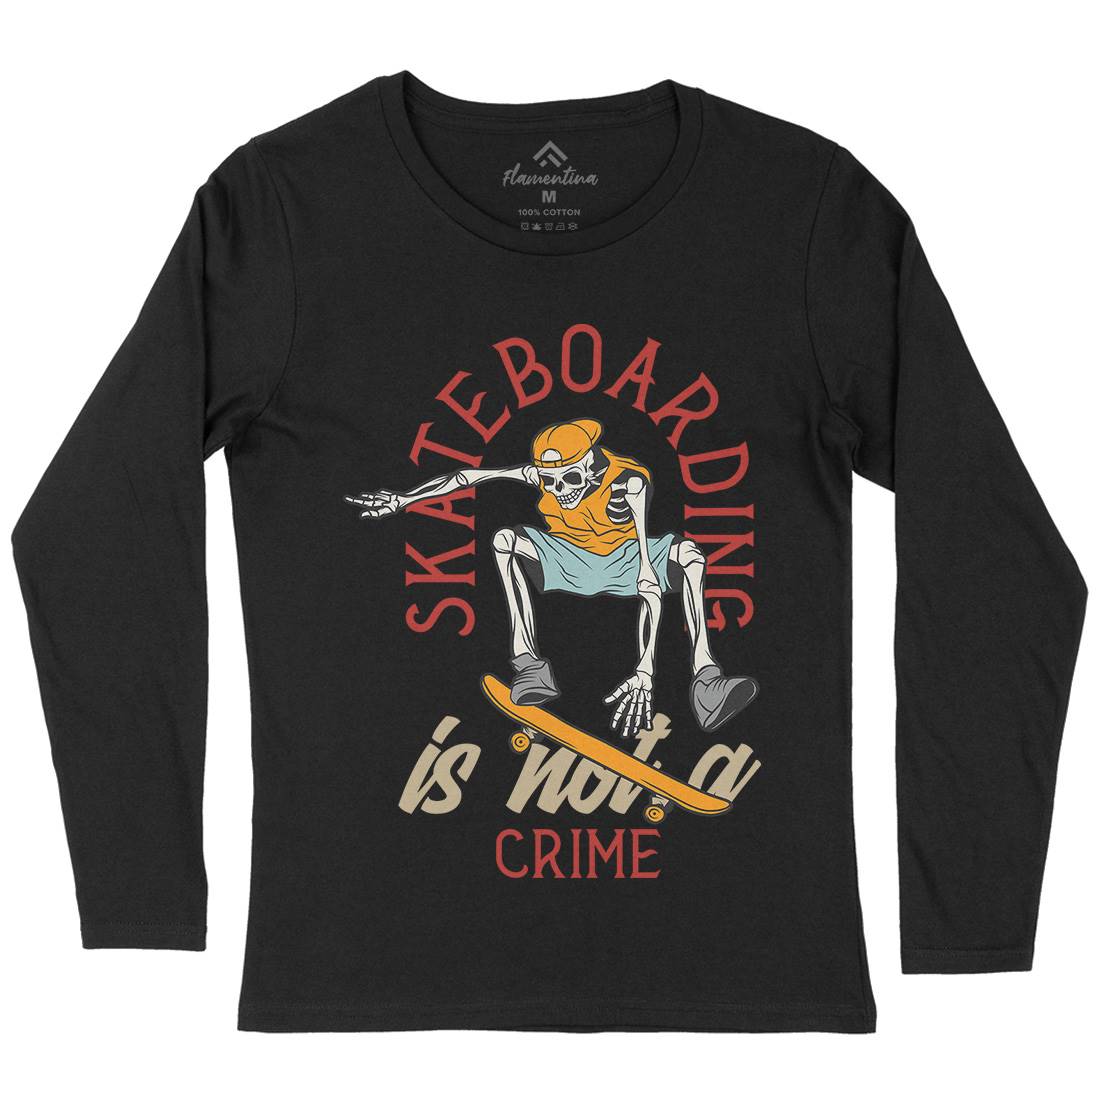 Skateboarding Crime Womens Long Sleeve T-Shirt Skate D975